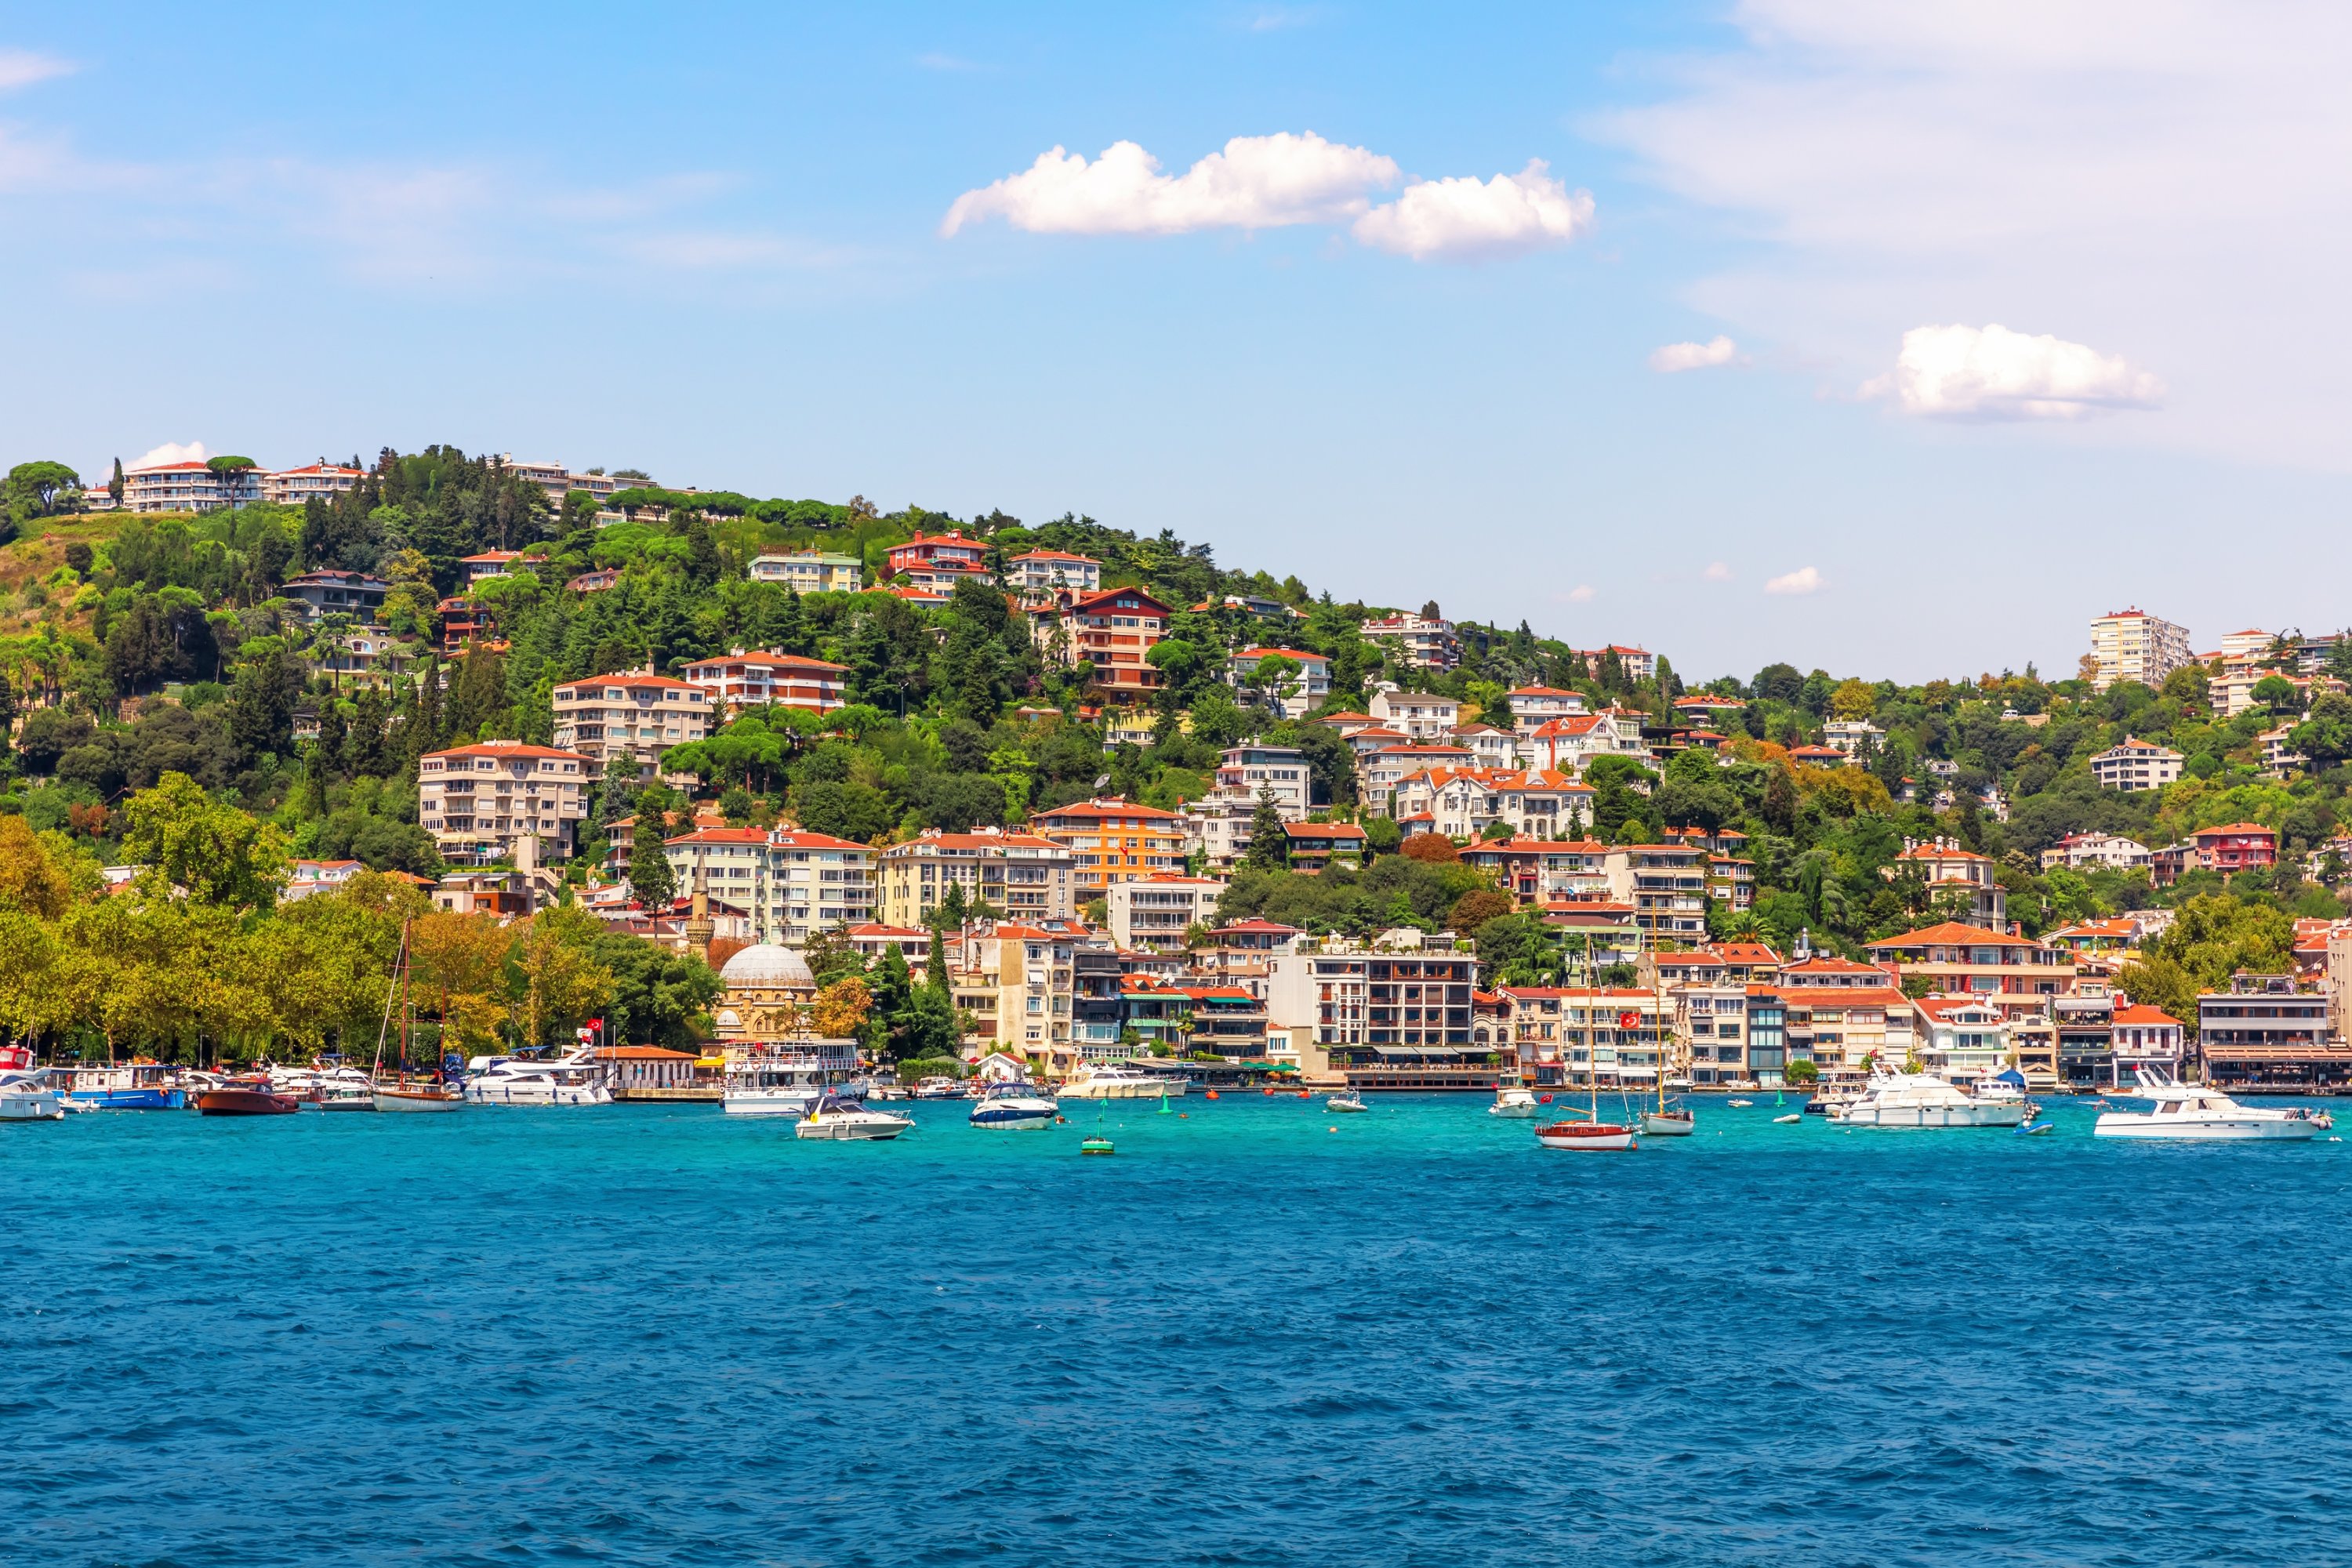 Bebek neighborhood on the bank of the Bosporus, Istanbul, Türkiye. (Shutterstock Photo)